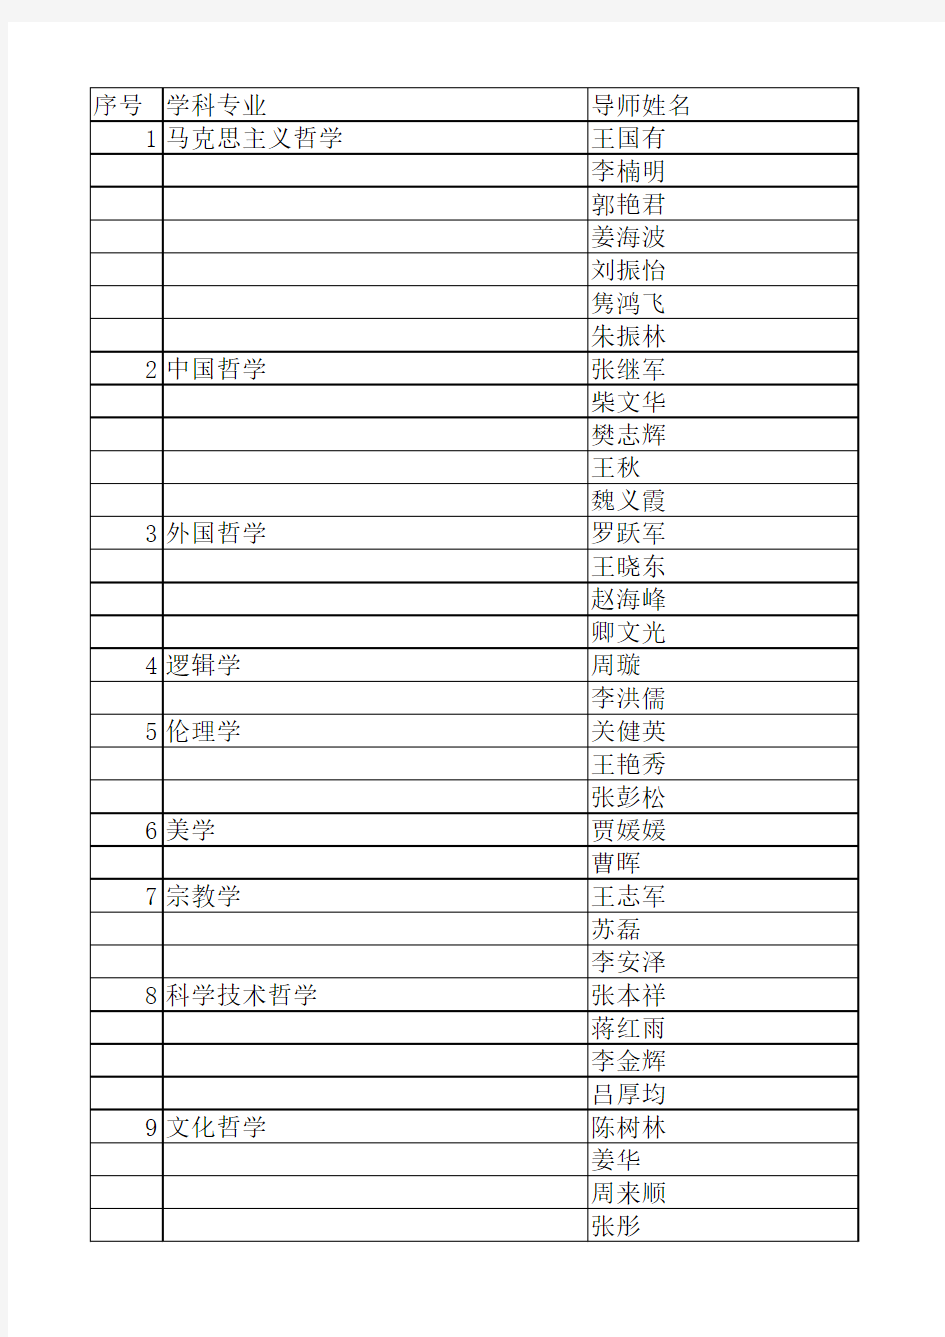 黑龙江大学硕士研究生导师名单